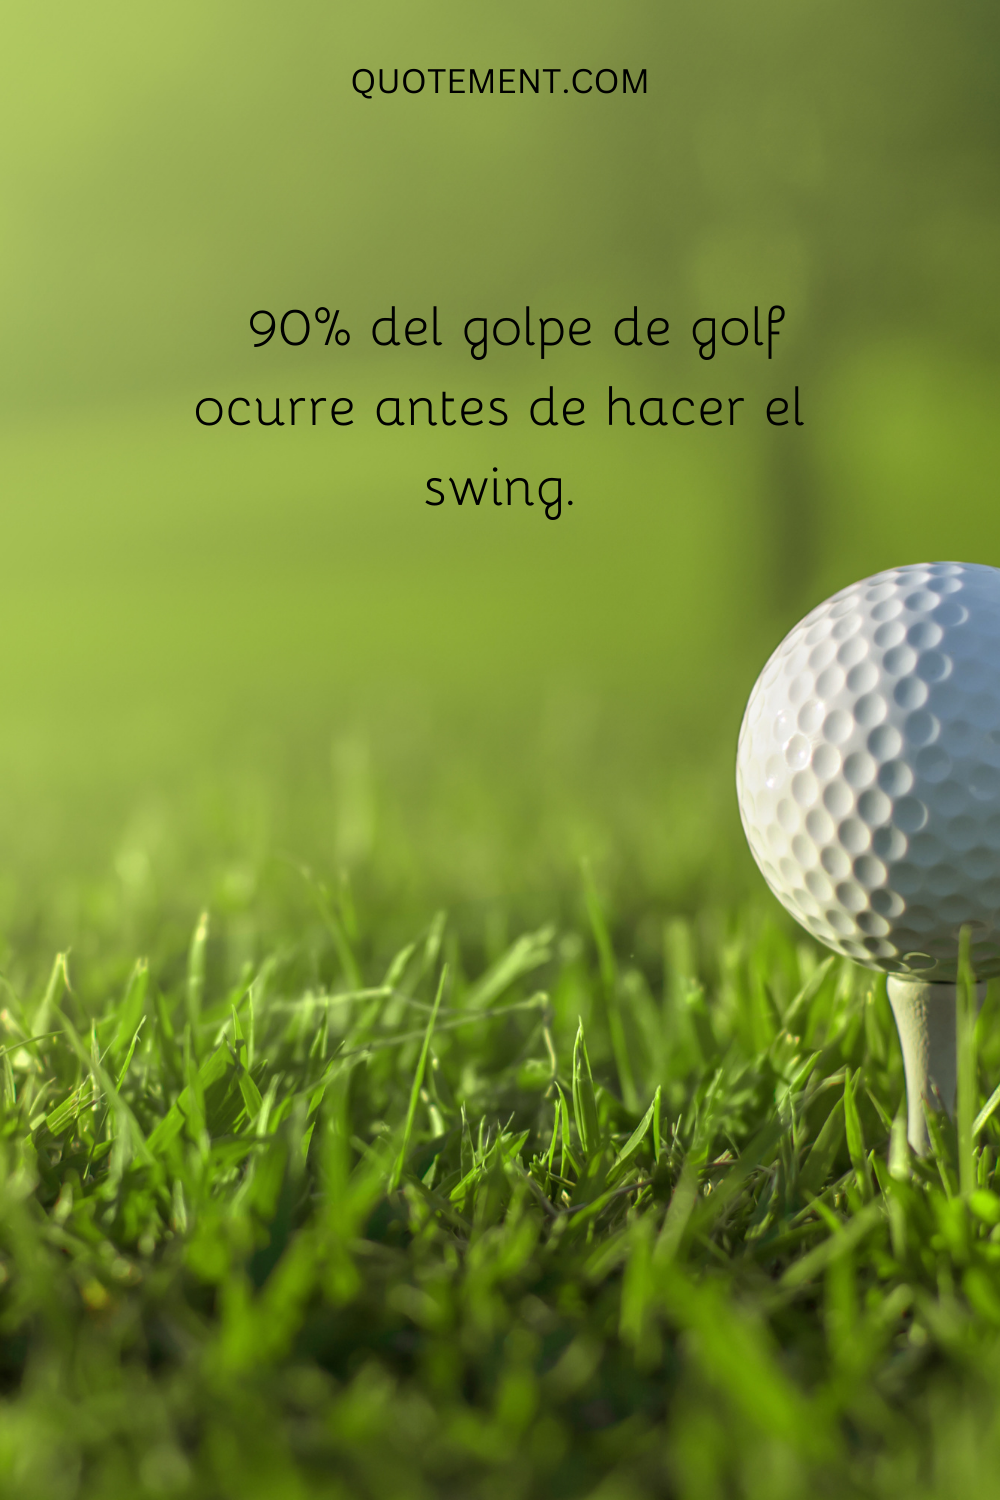 90% del golpe de golf ocurre antes de hacer el swing.